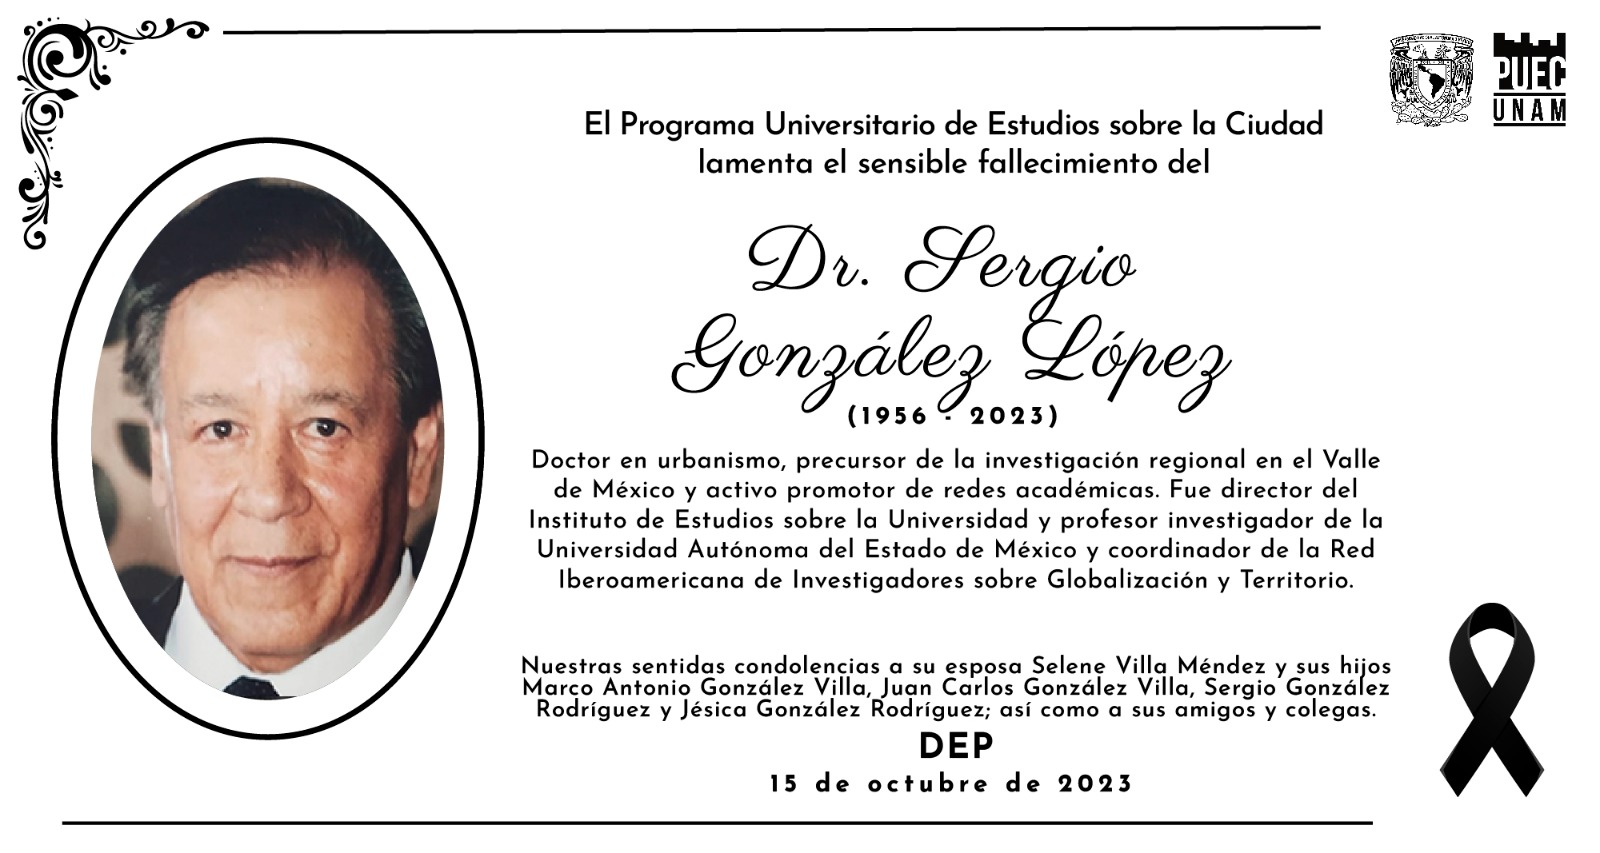 El PUEC lamenta la partida del doctor Sergio González López, de la UAEMéx, precursor de la investigación regional en el Valle de México